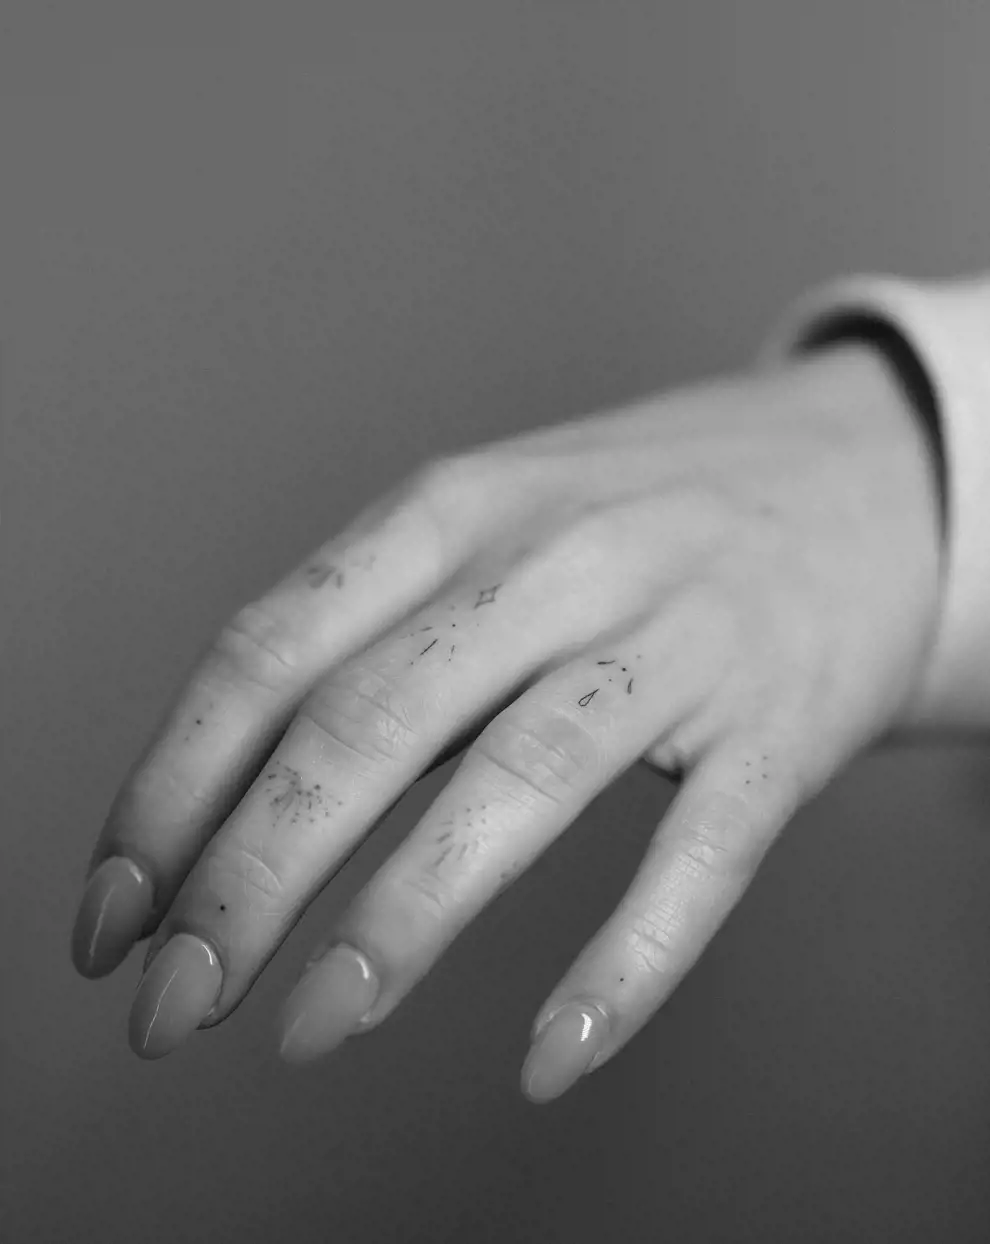 Tatuajes pequeños para mujer: ornamental en la mano